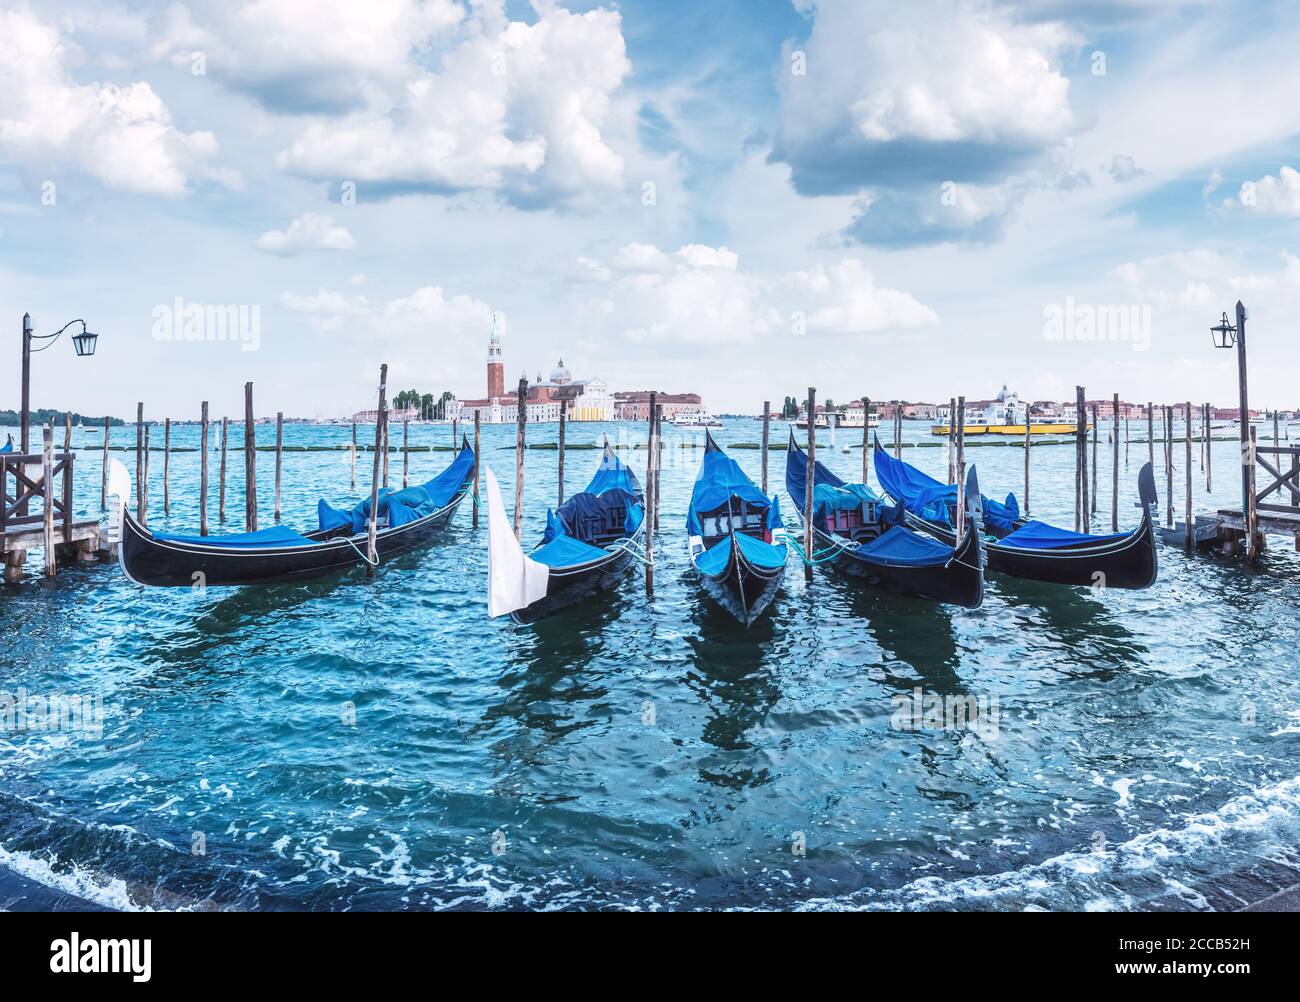 Paysage coloré avec ciel bleu clair sur la piazza San Marco à Venise. Rangée de gondoles garées sur le quai de la ville. Église de San Giorgio Maggiore en arrière-plan, Italie, Europe Banque D'Images